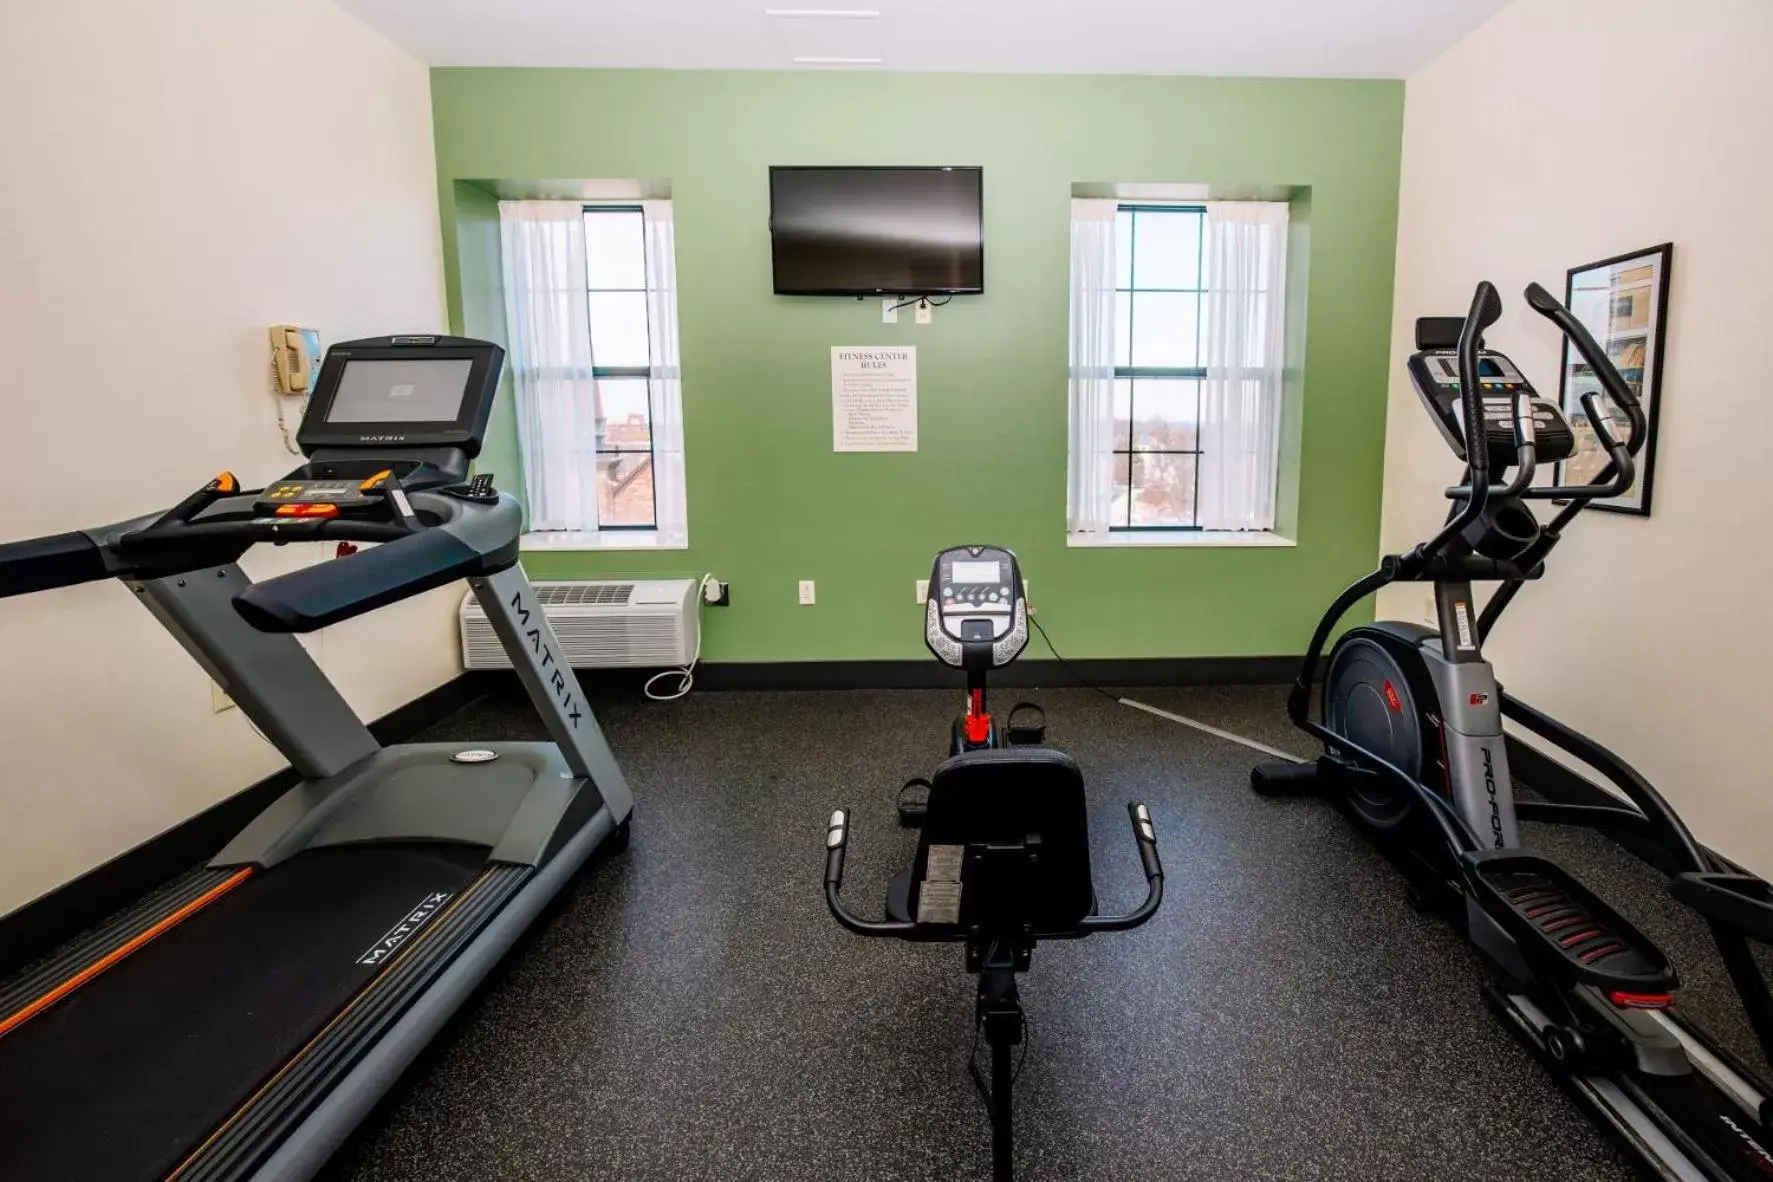 Fitness centre/facilities, Fitness Center/Facilities in Landmark Inn